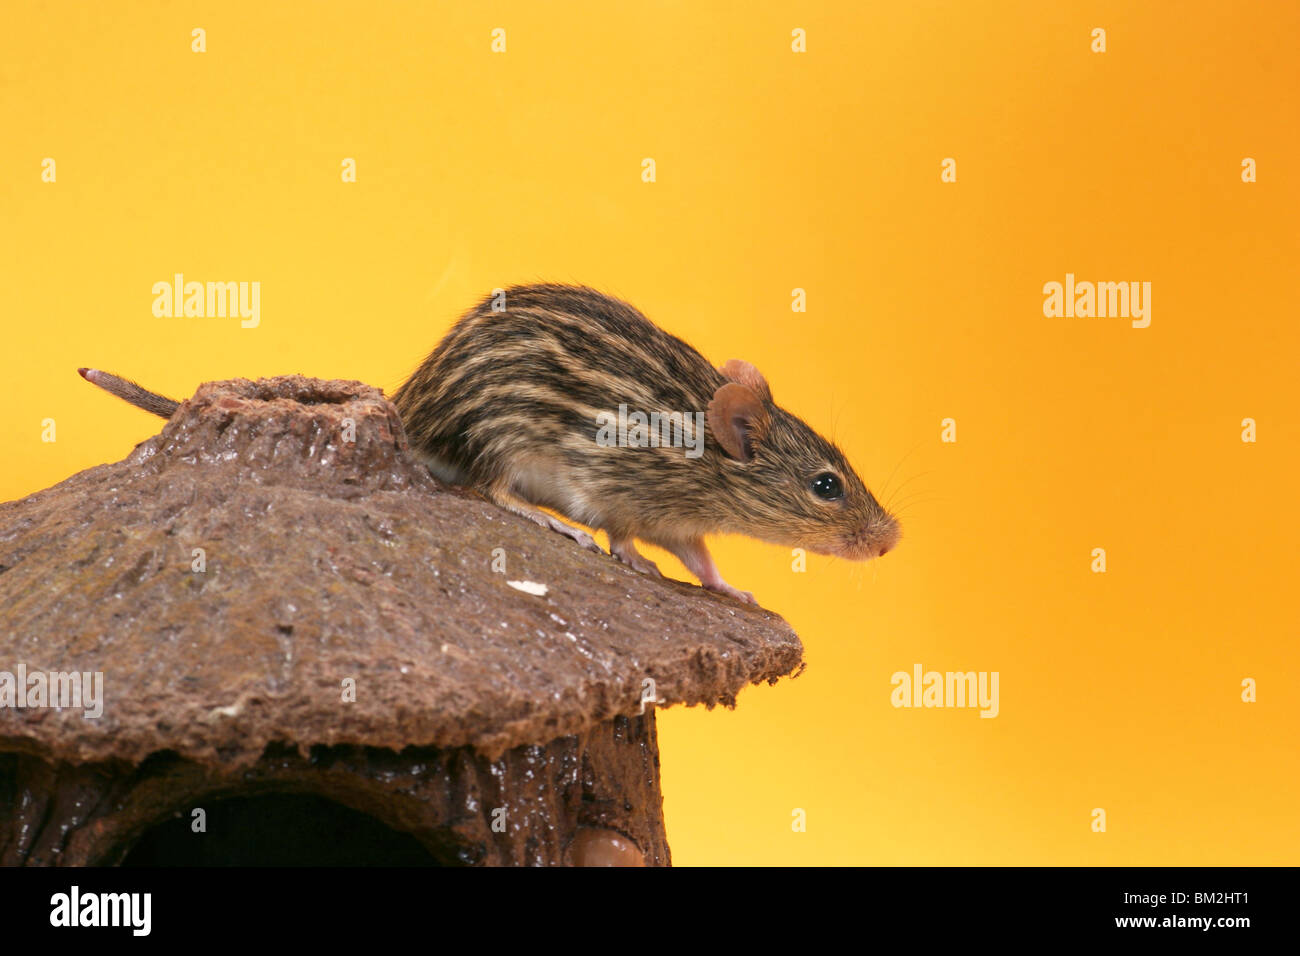 Afrikanische Streifengrasmaus / mouse Stock Photo